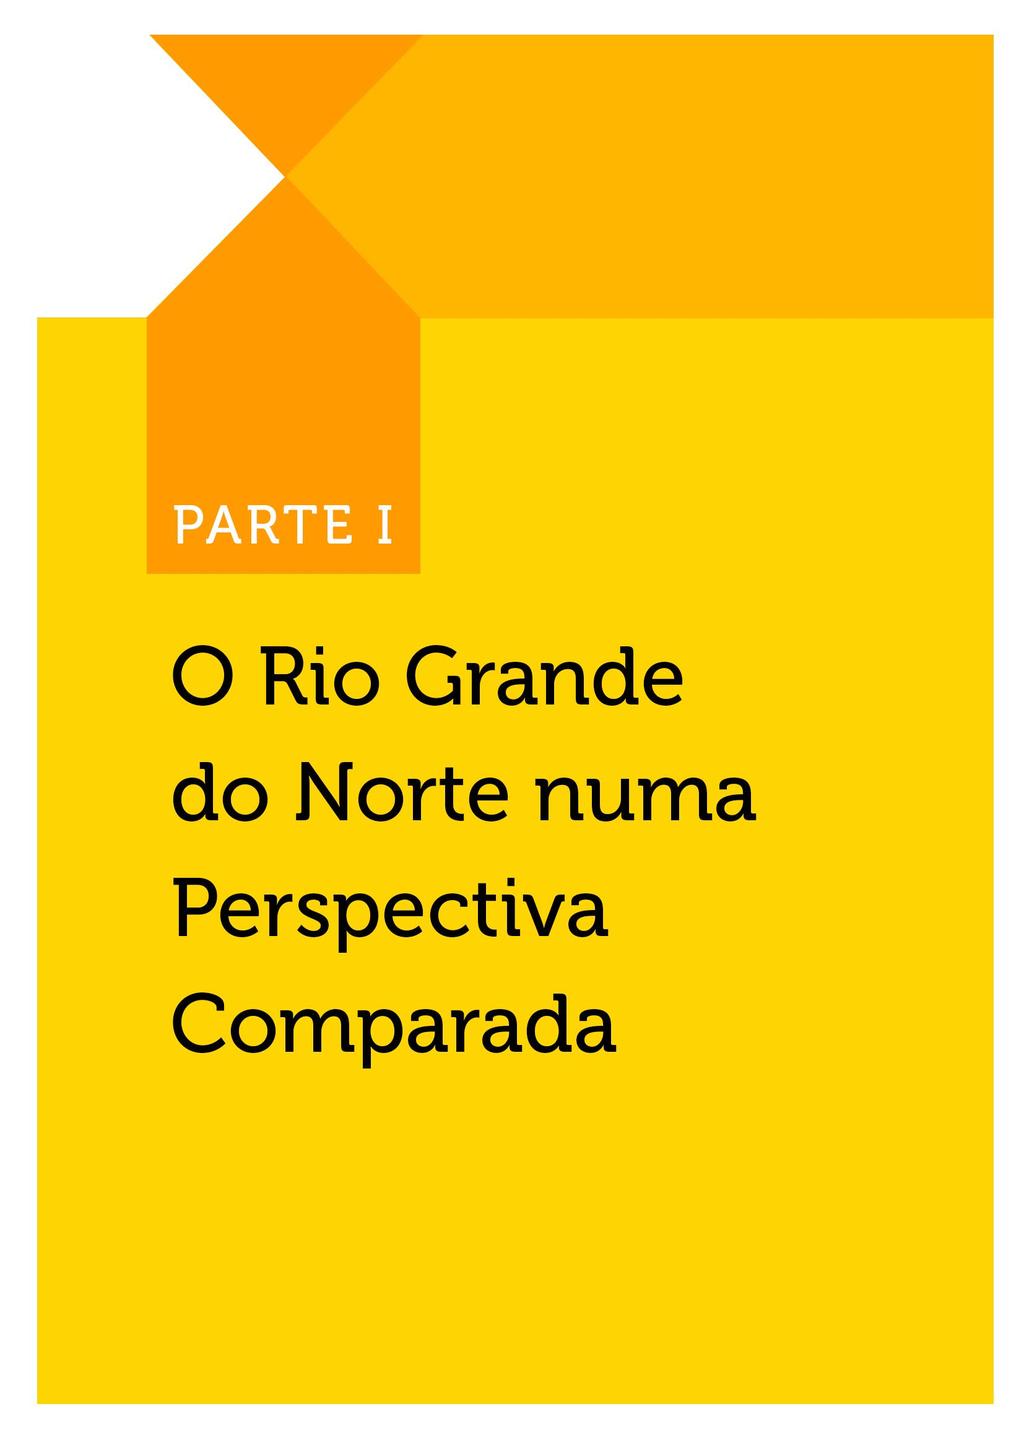 PARTE I - O RIO GRANDE DO